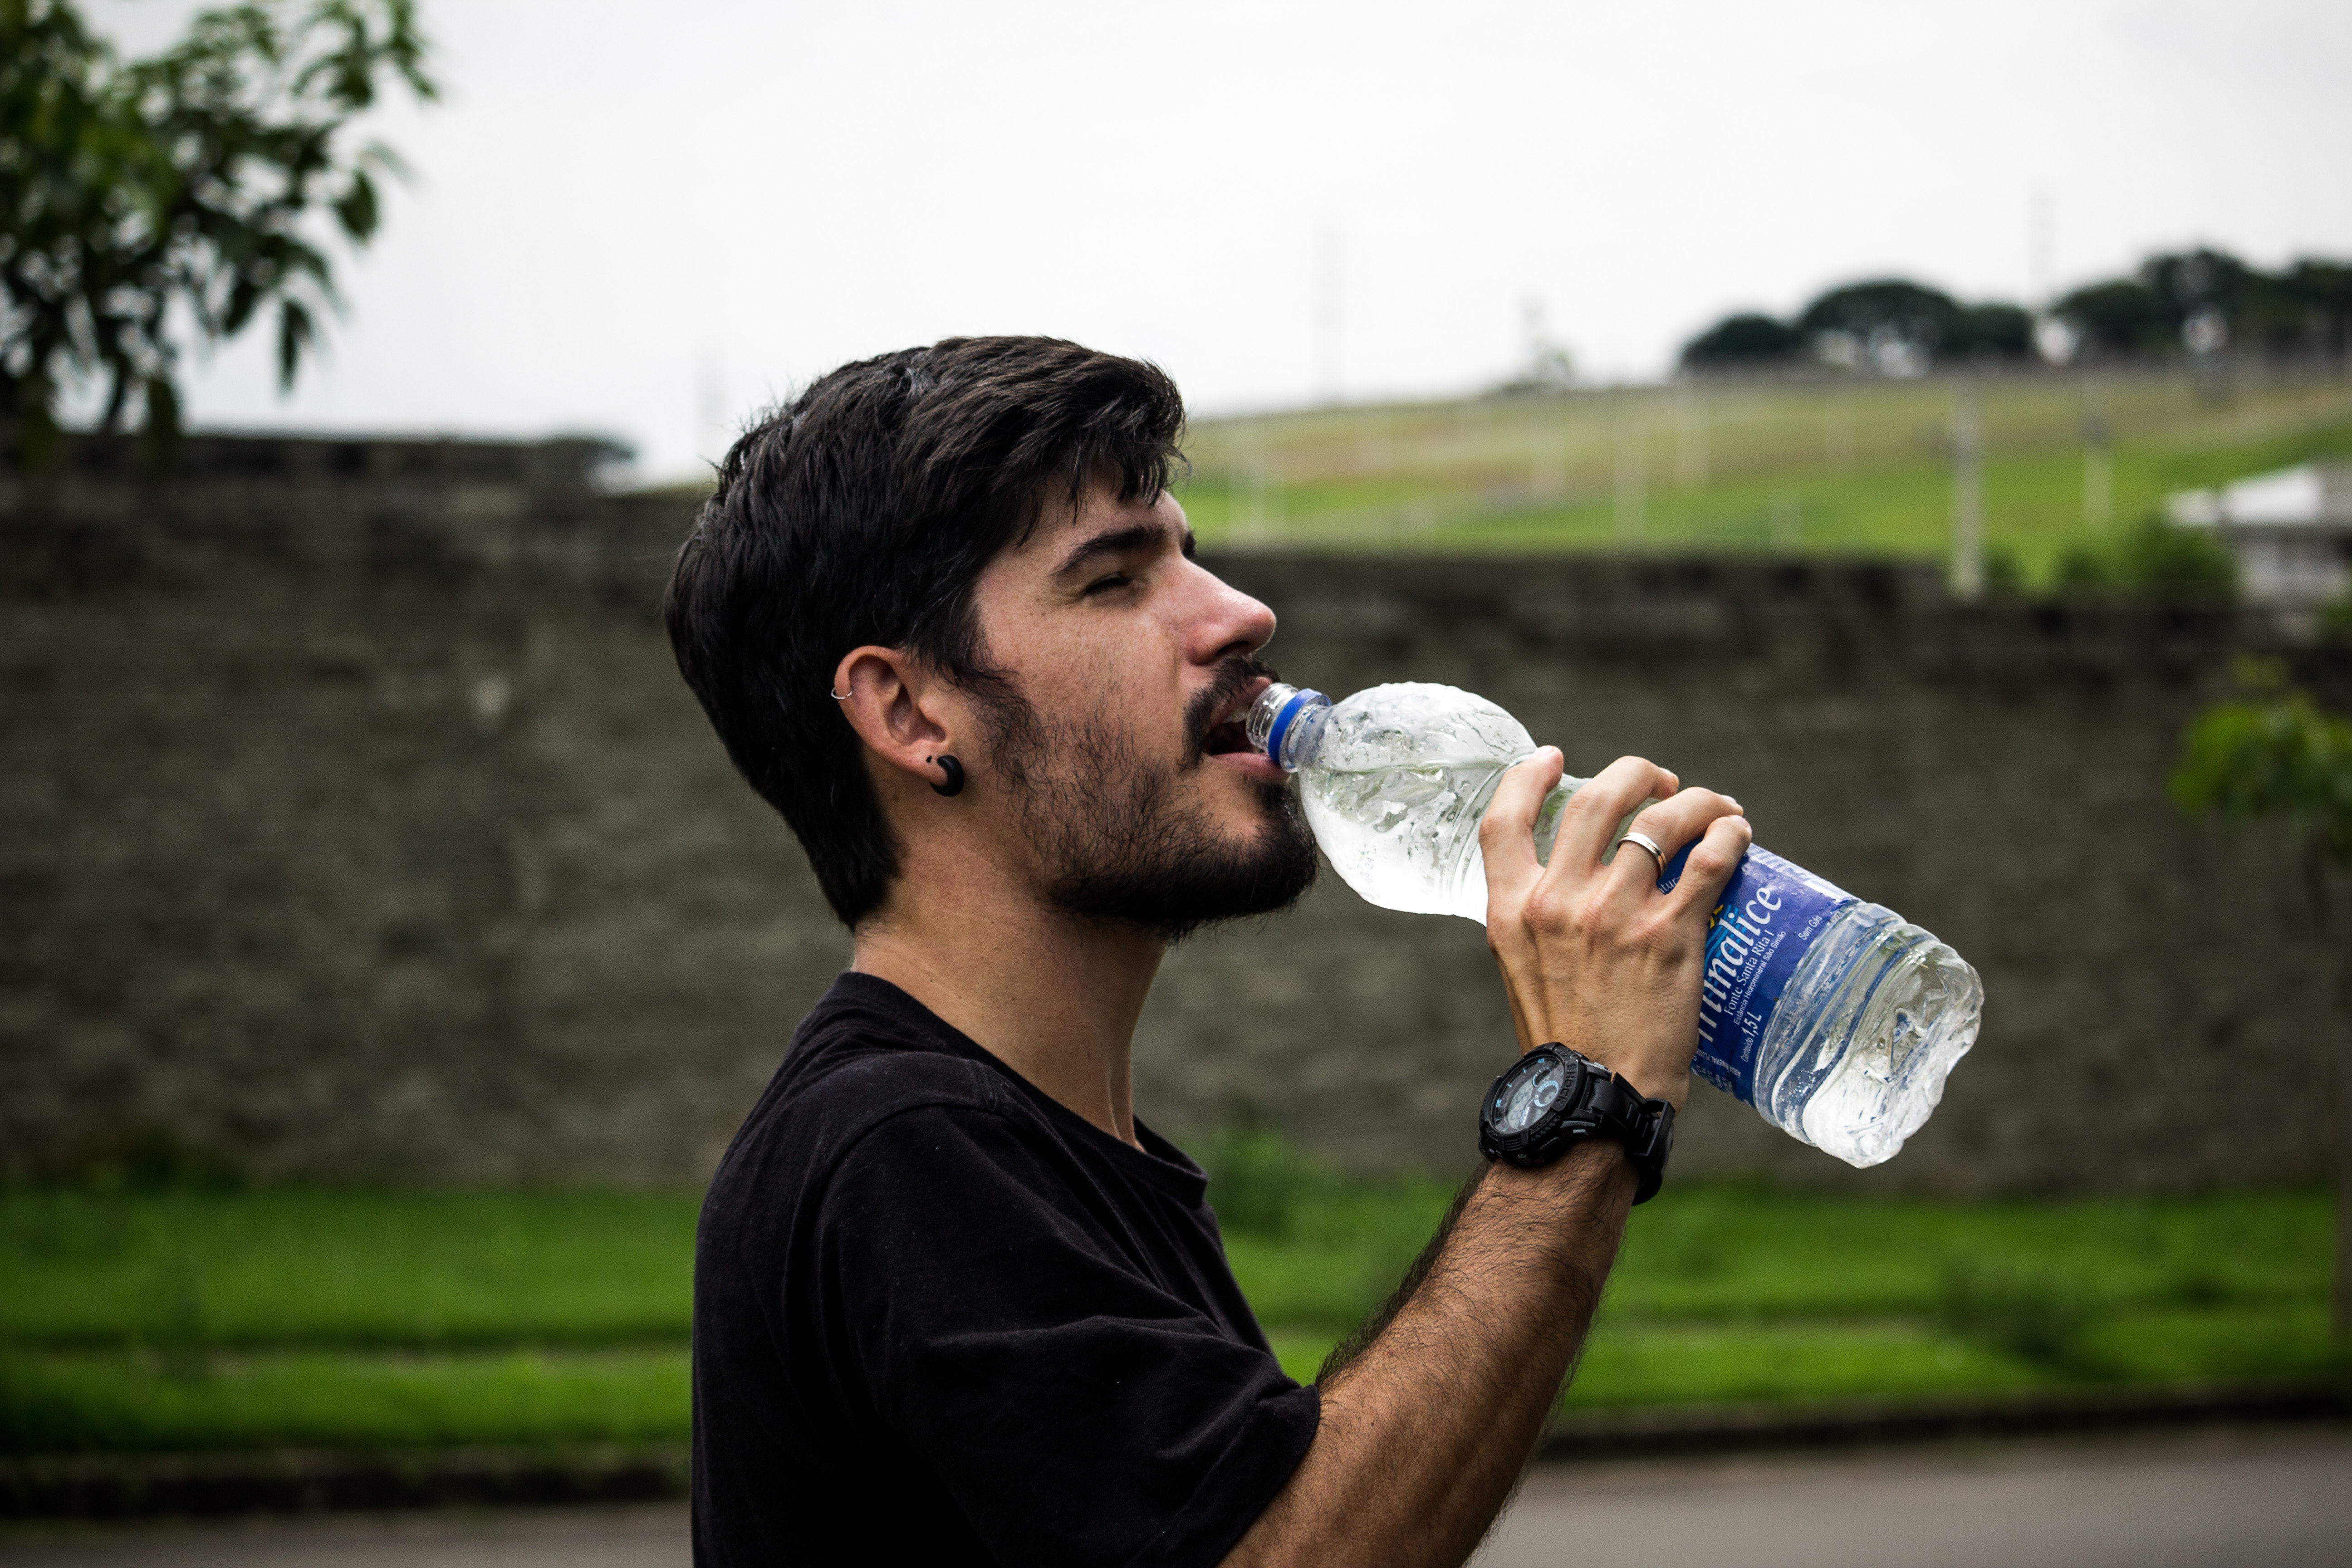 Man wearing black shirt drinking water photo